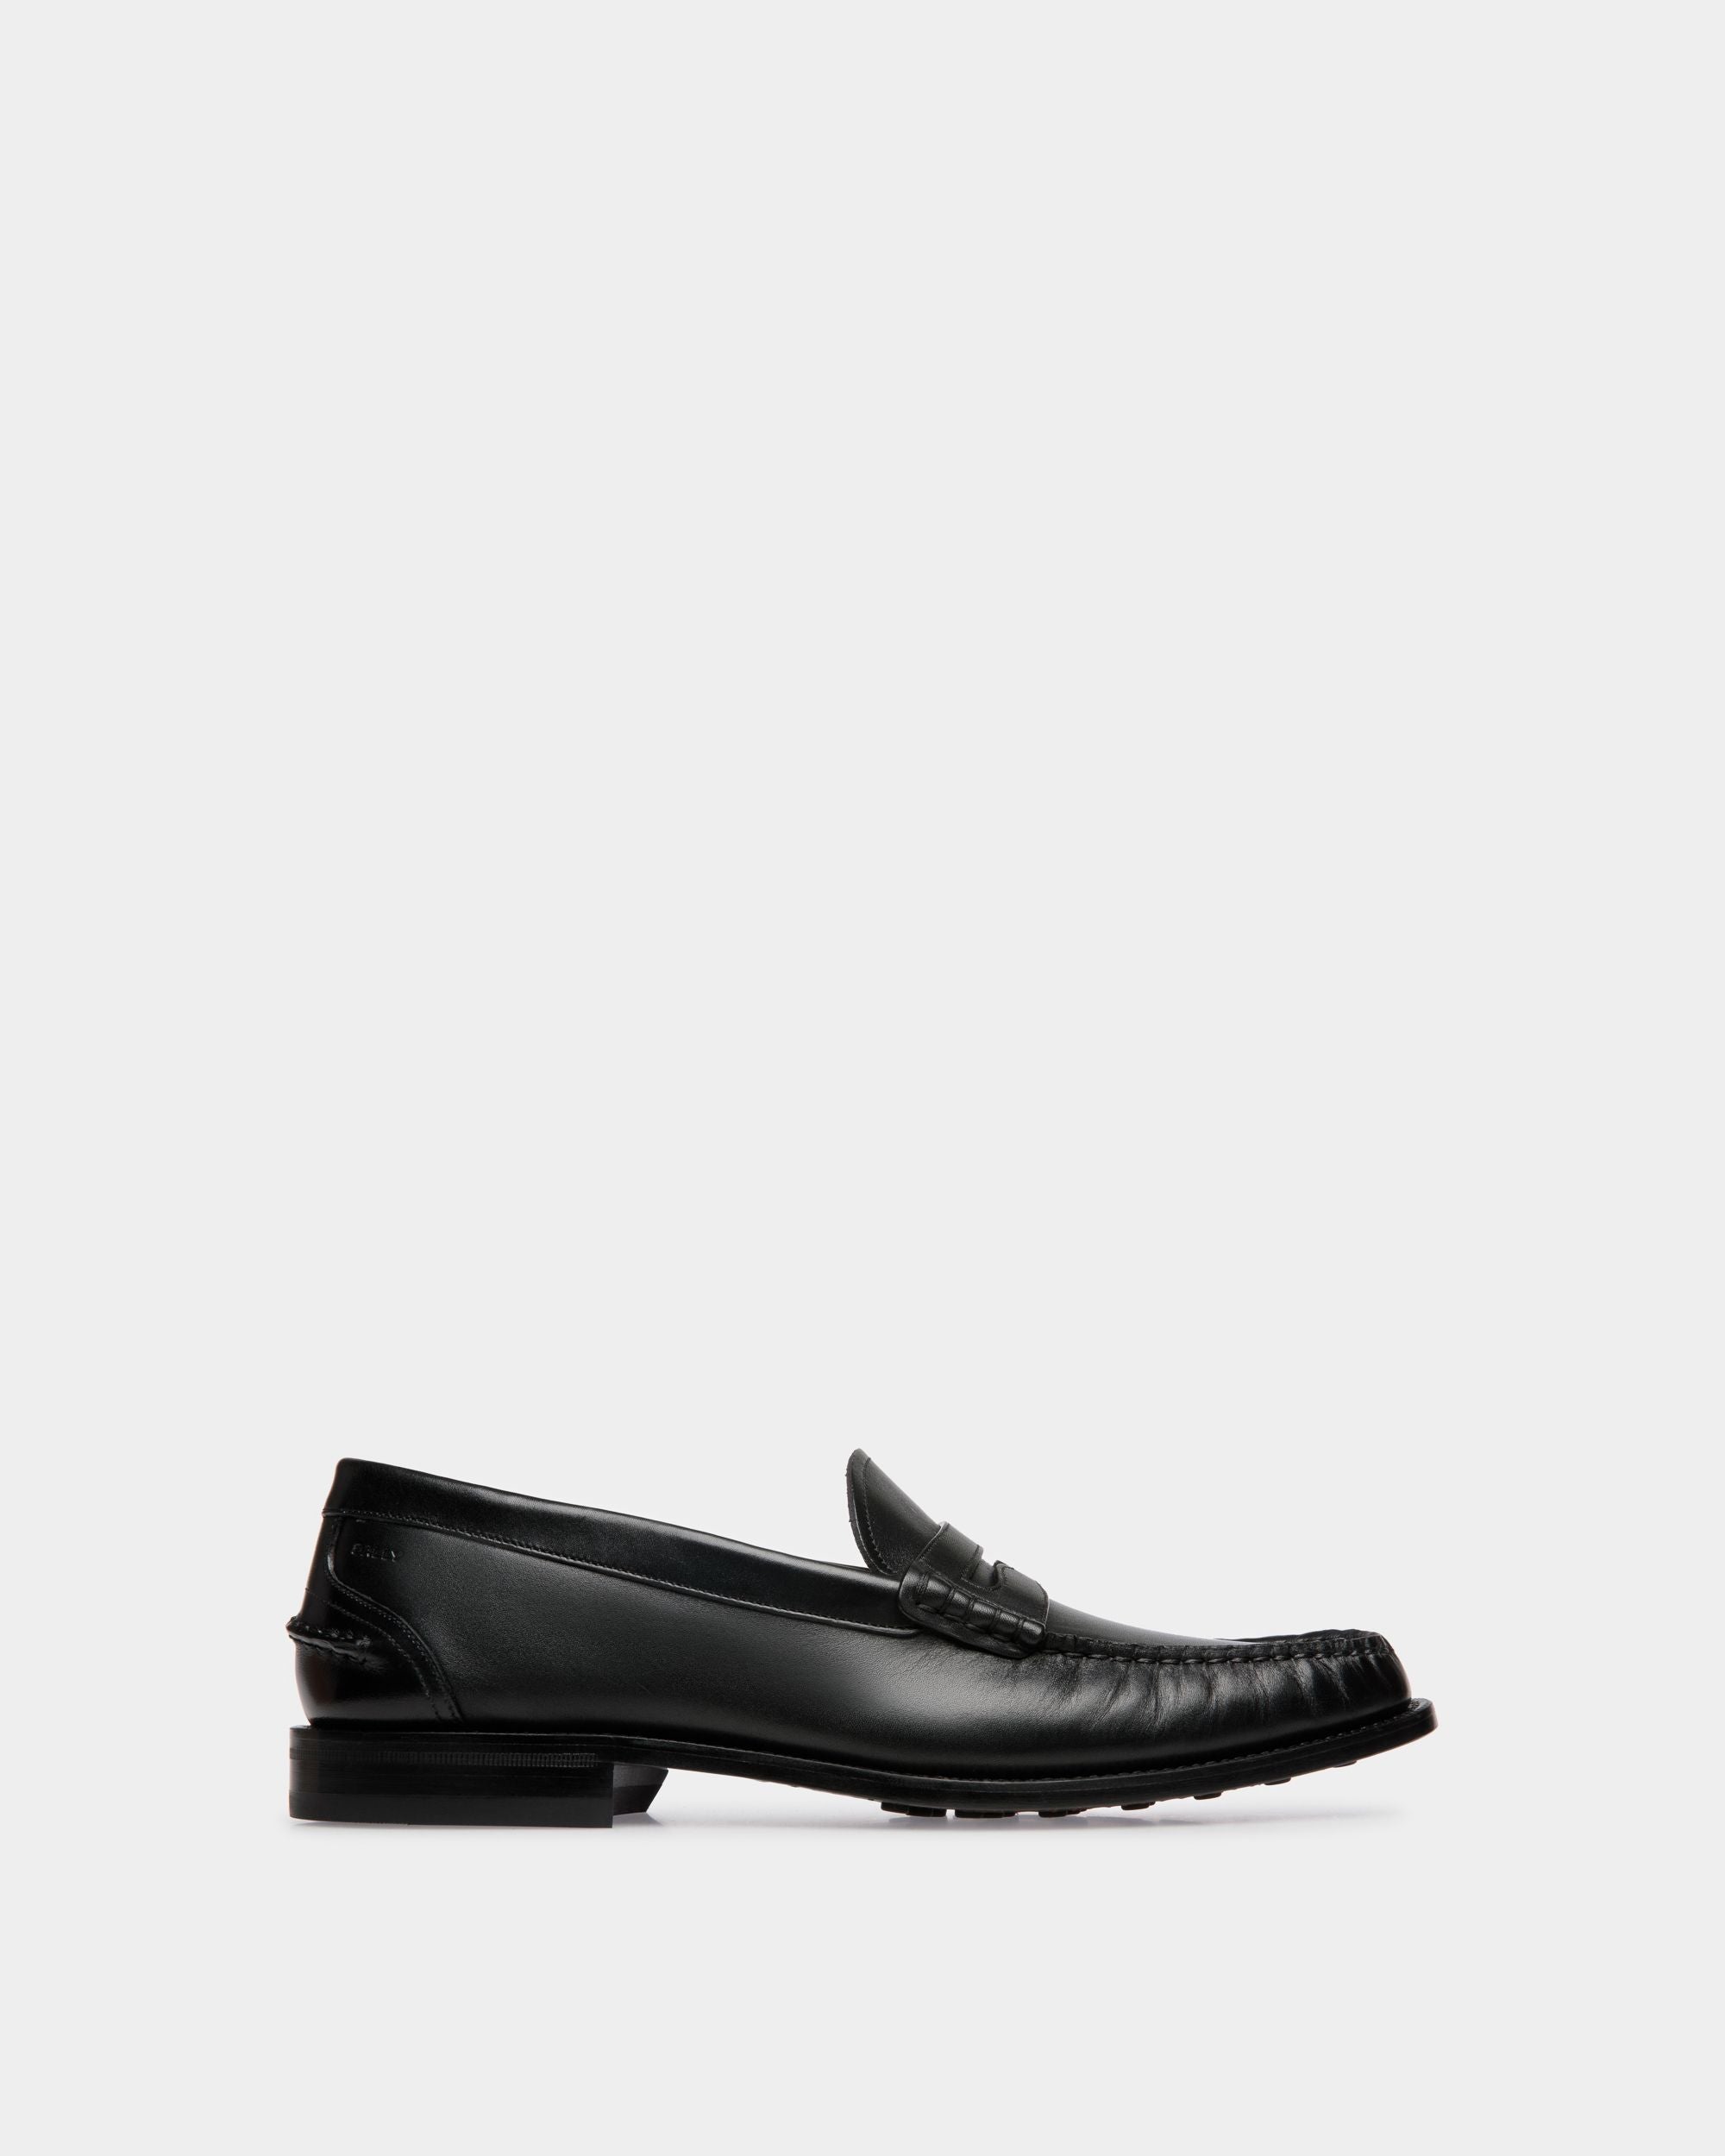 Designer Leather slip-on Loafers & Moccasins for Men | Bally